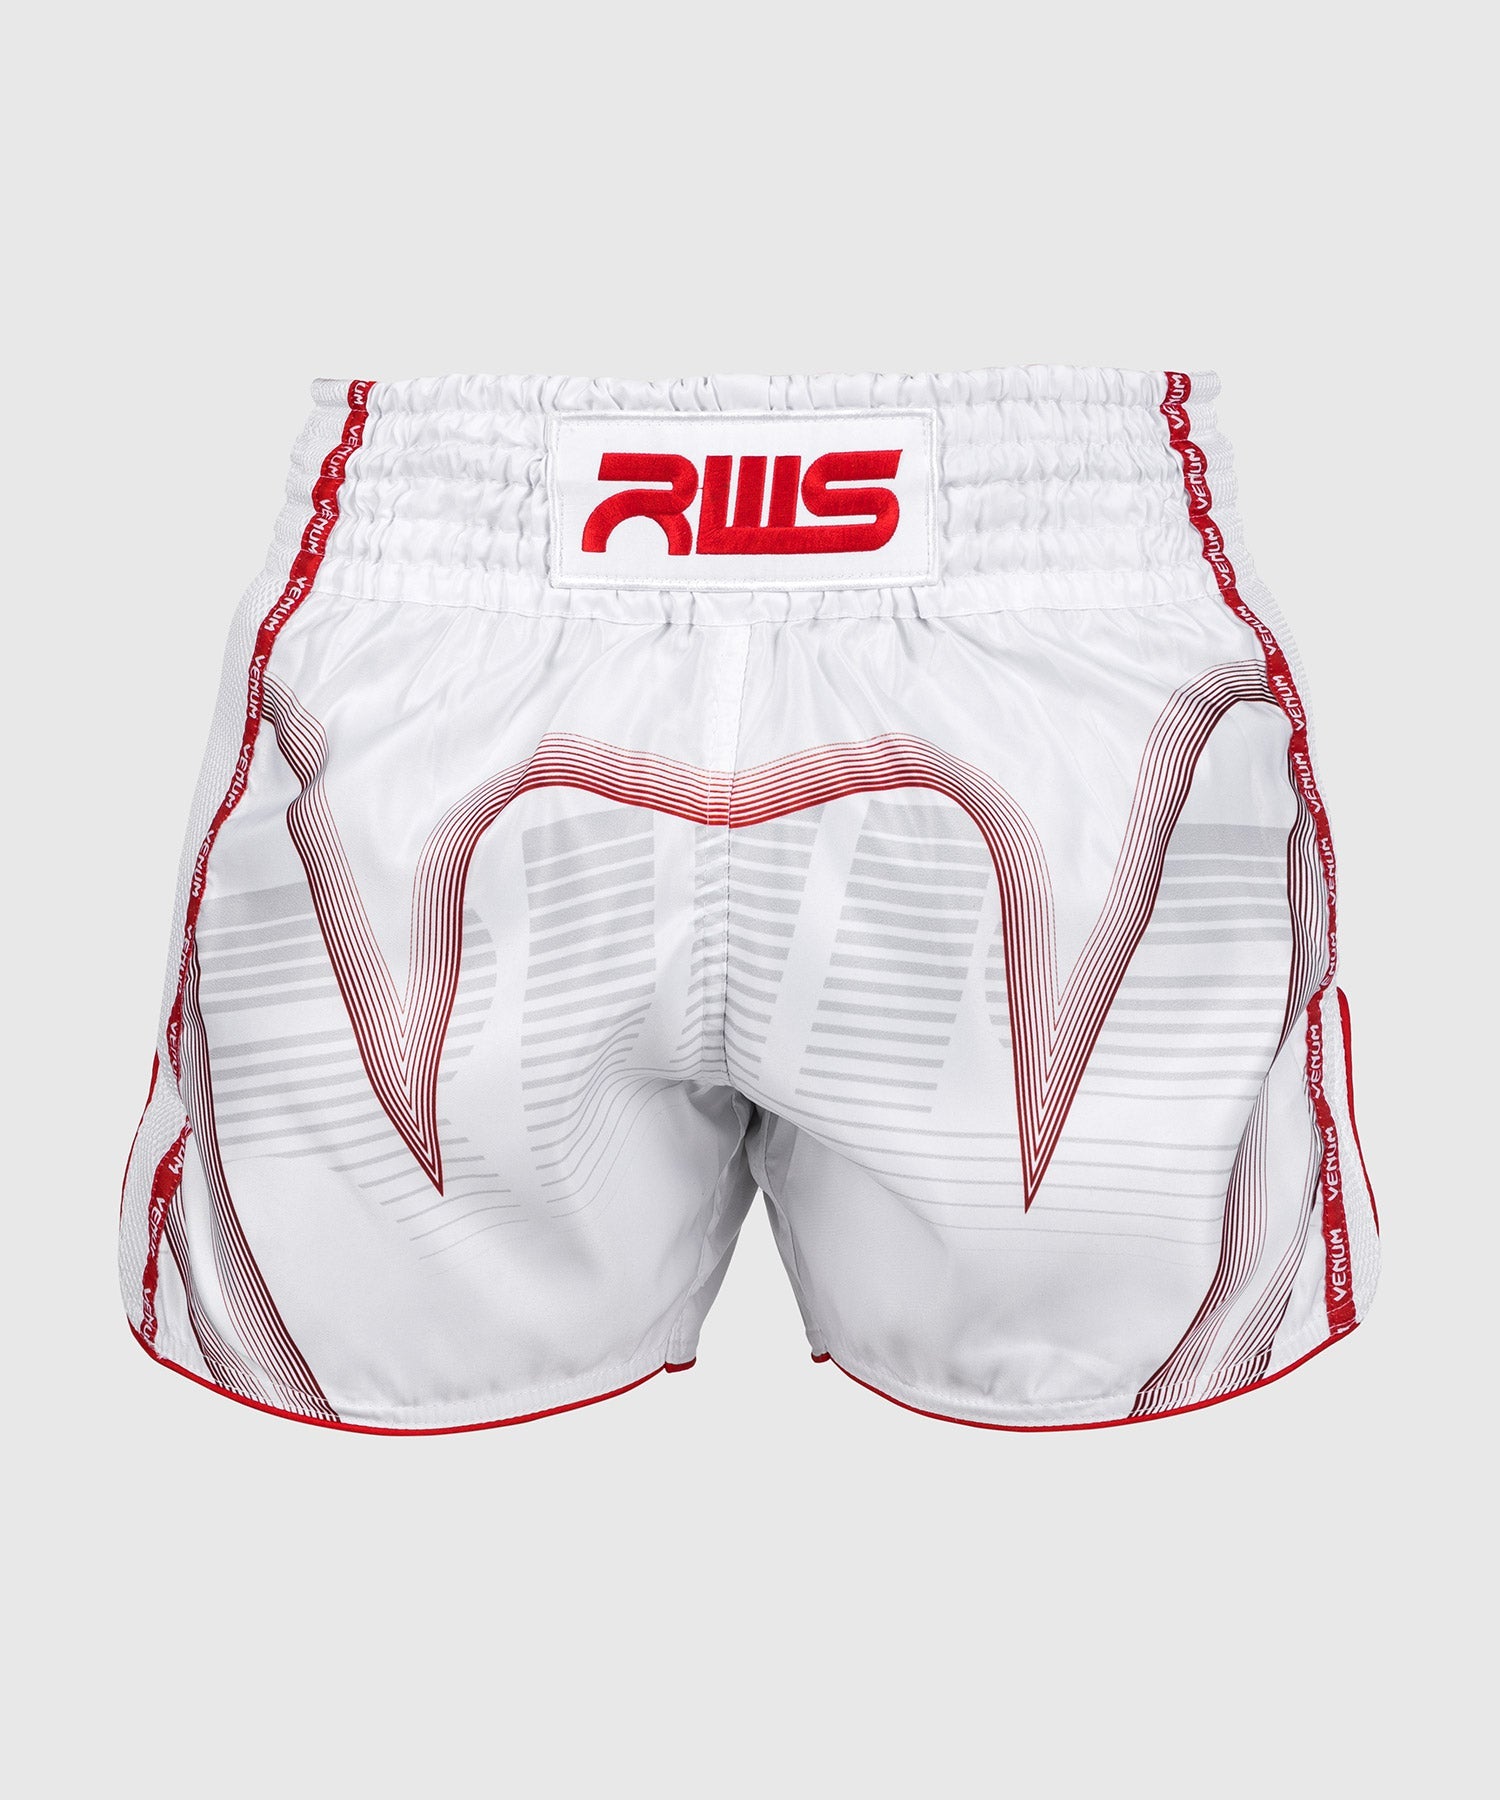 Venum RWS Shorts White